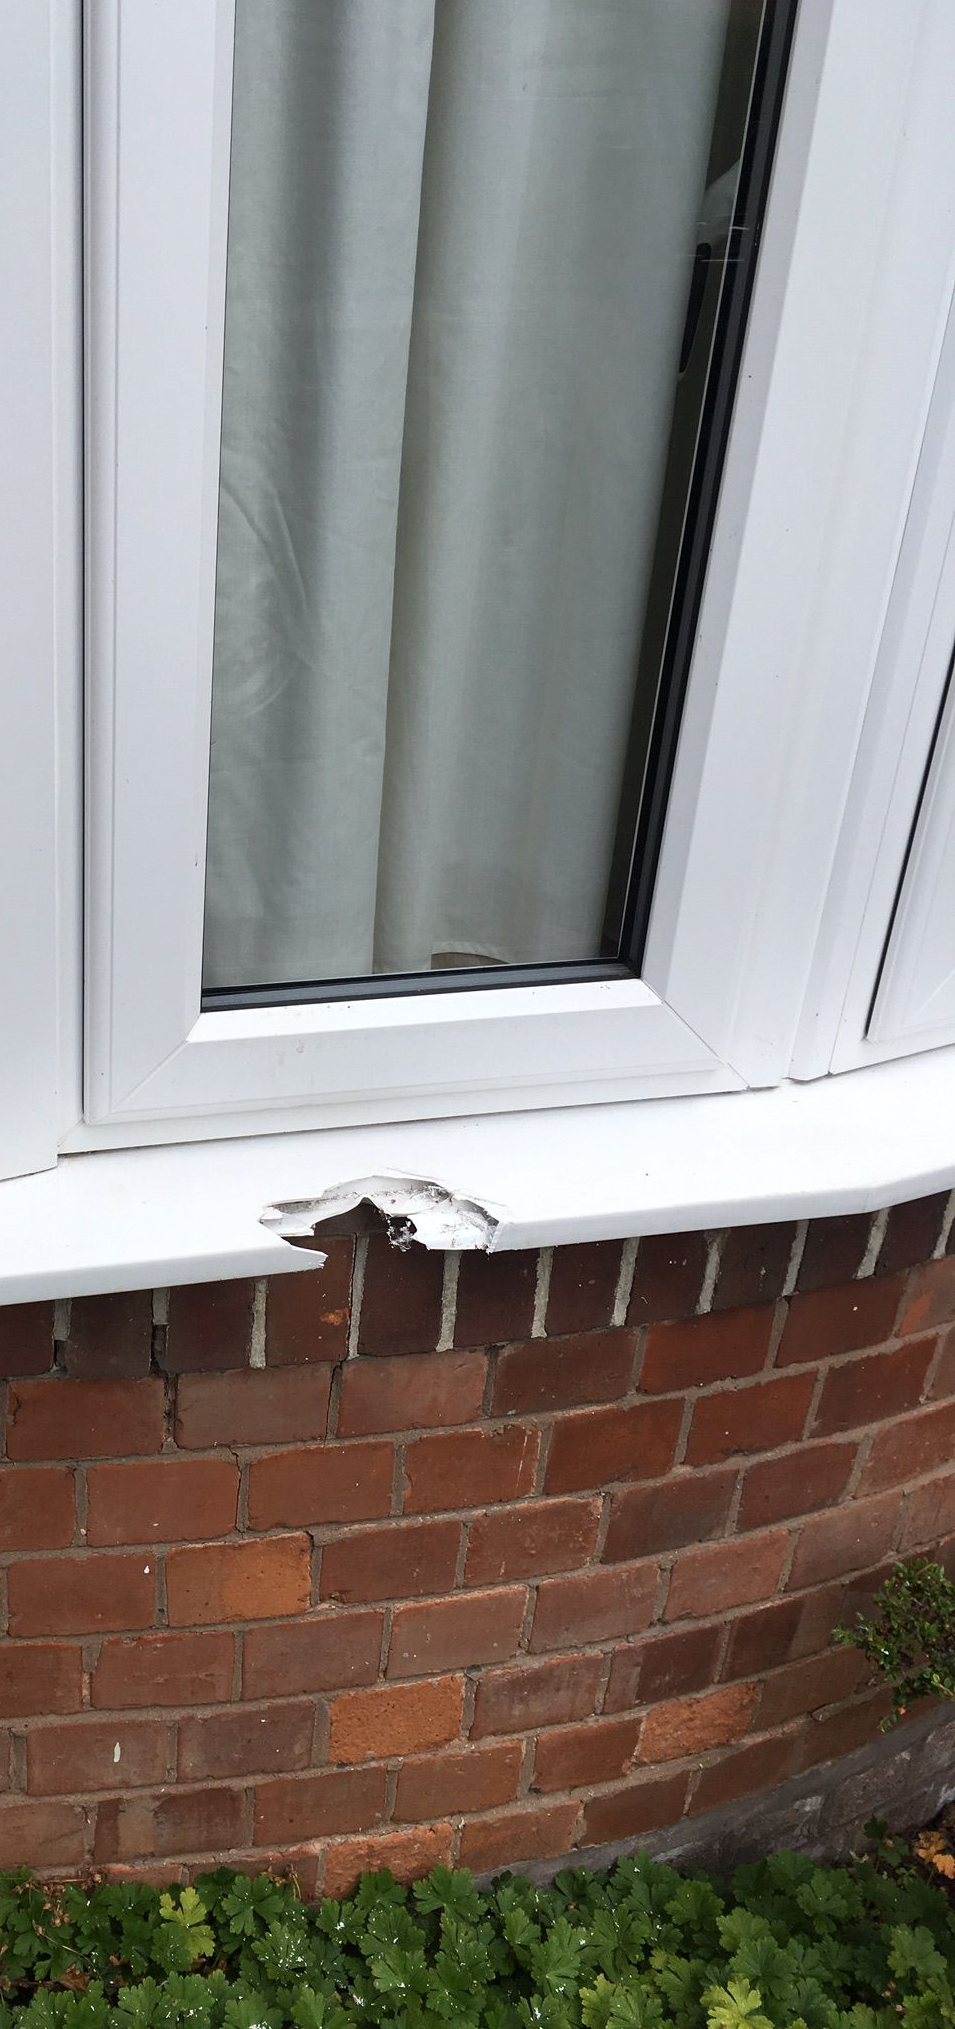 Window repair sill repair